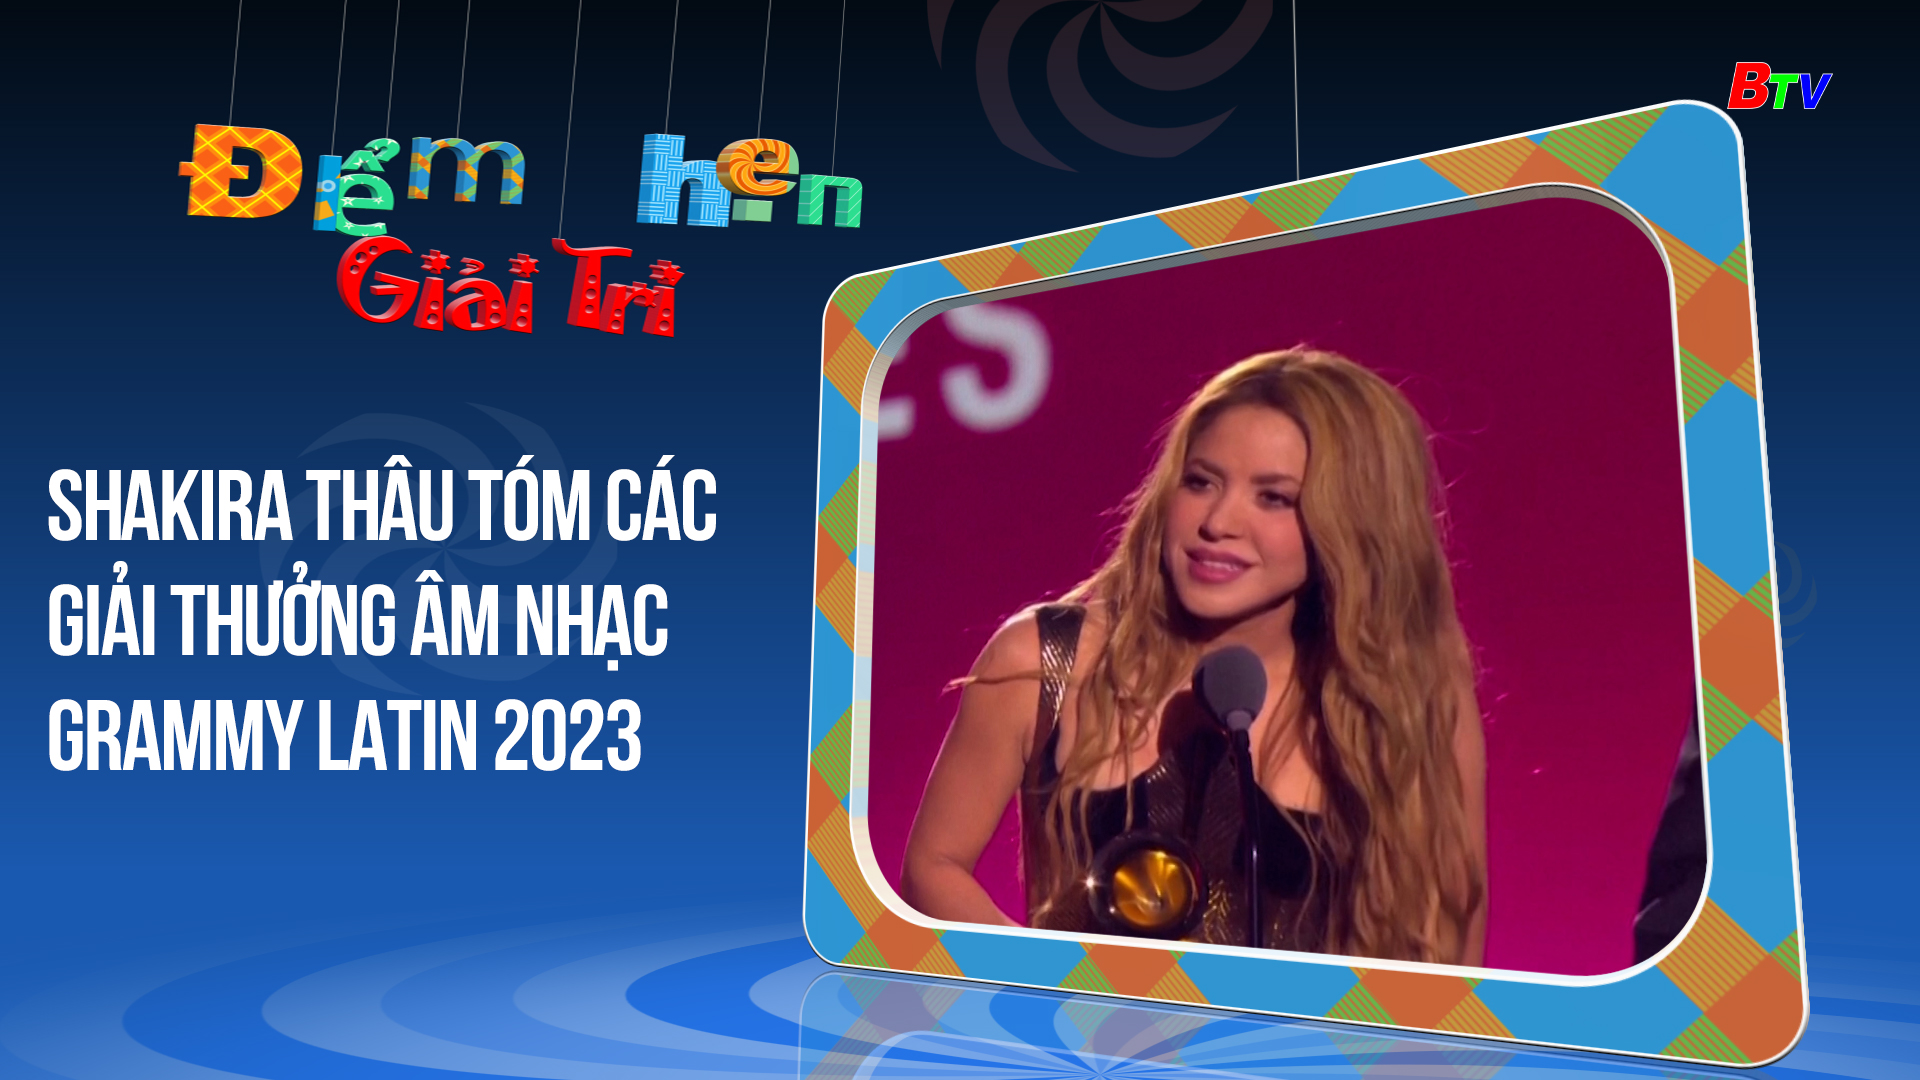 Shakira thâu tóm các giải thưởng âm nhạc Grammy Latin 2023 | Điểm hẹn giải trí | 20/11/2023